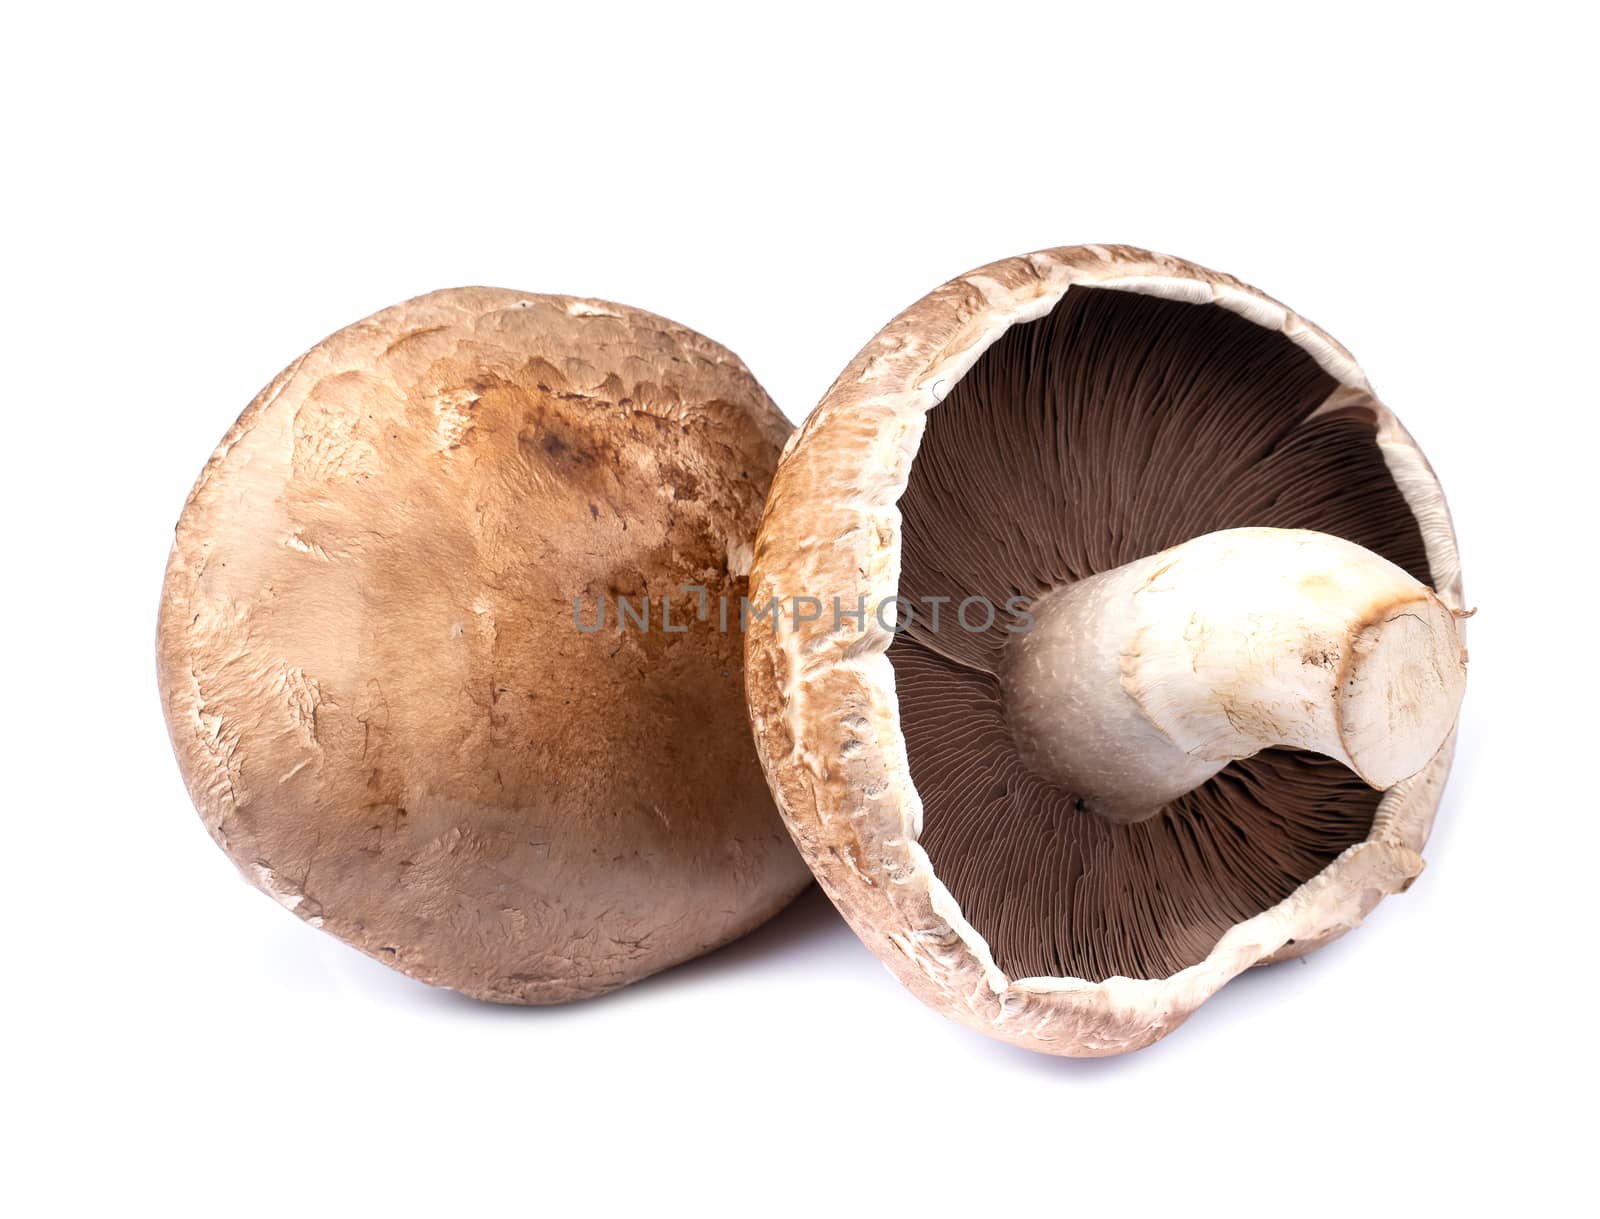 Portobello mushrooms isolated on white background by freedomnaruk